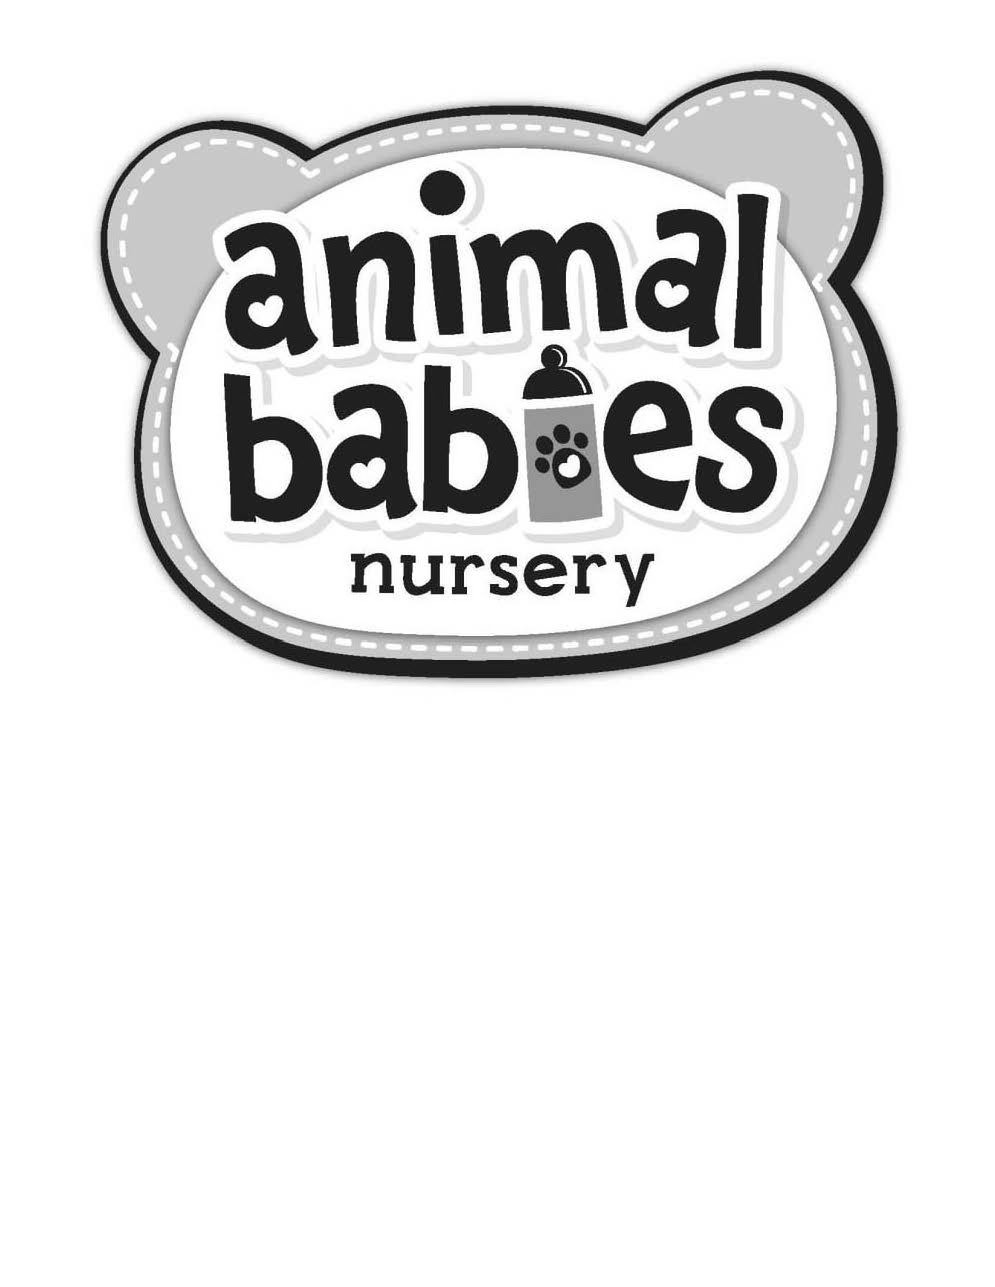  ANIMAL BABIES NURSERY